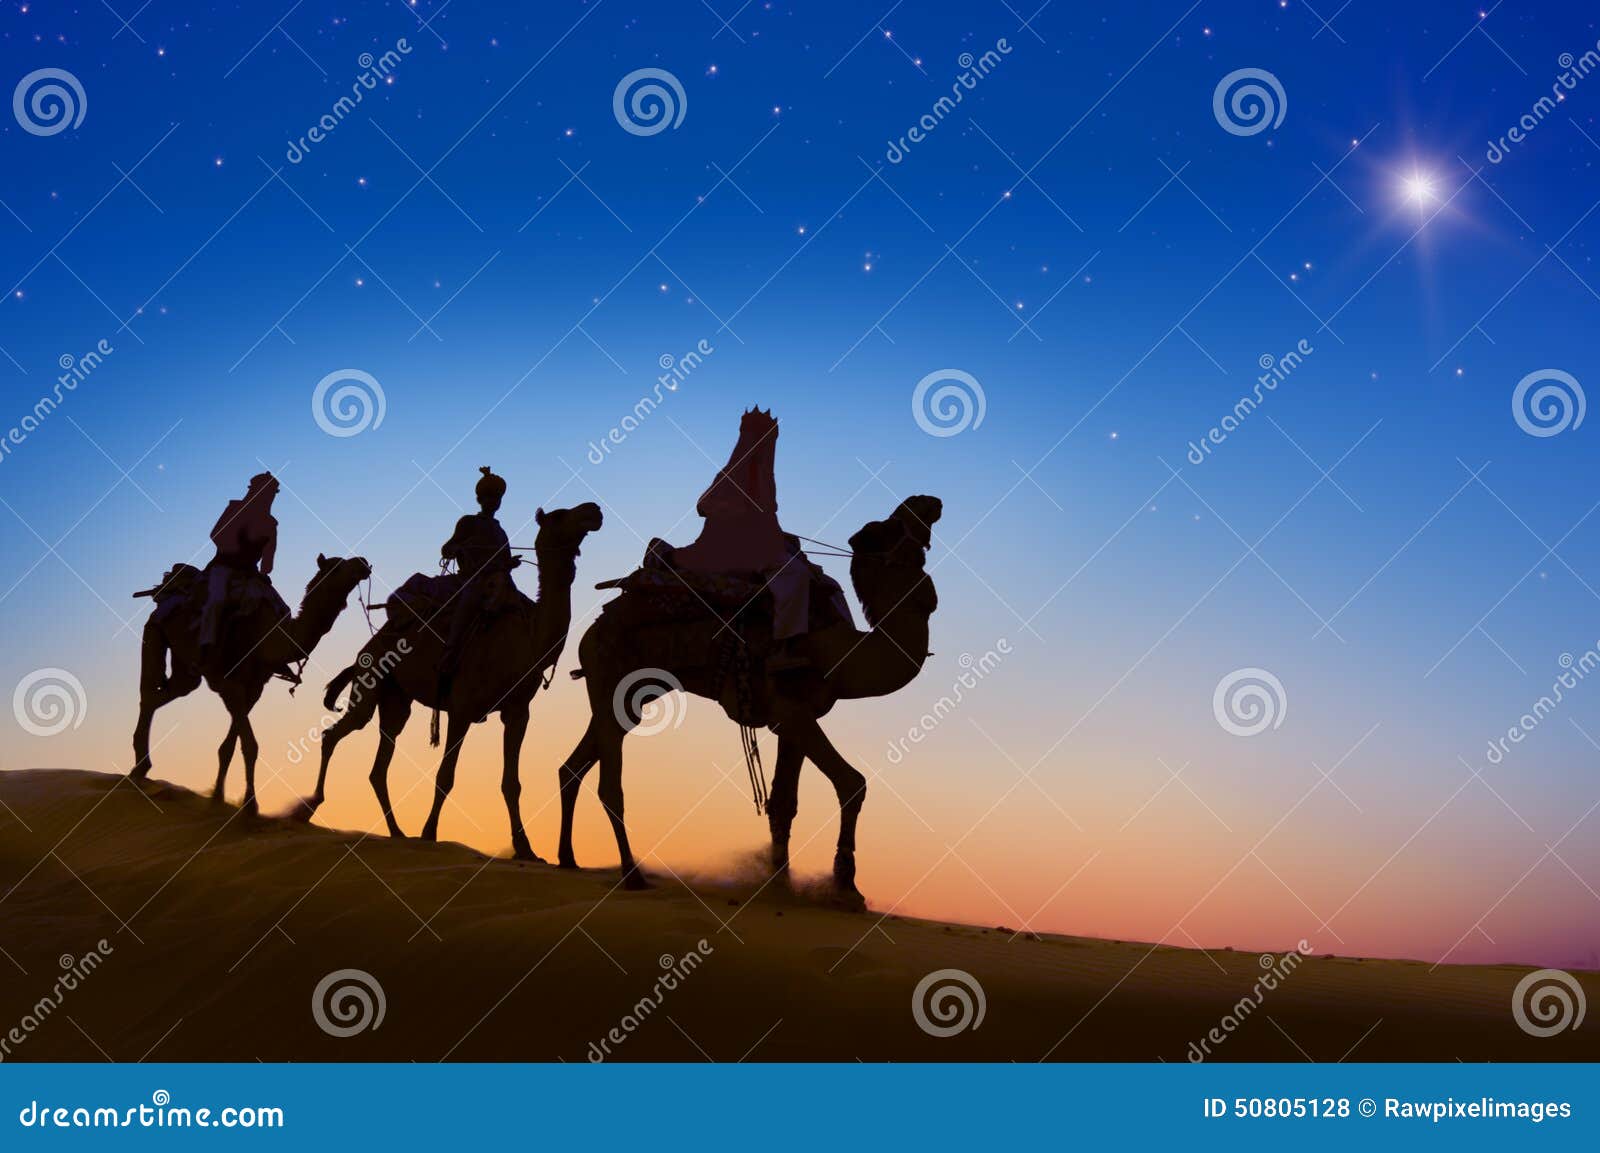 three wise men desert night